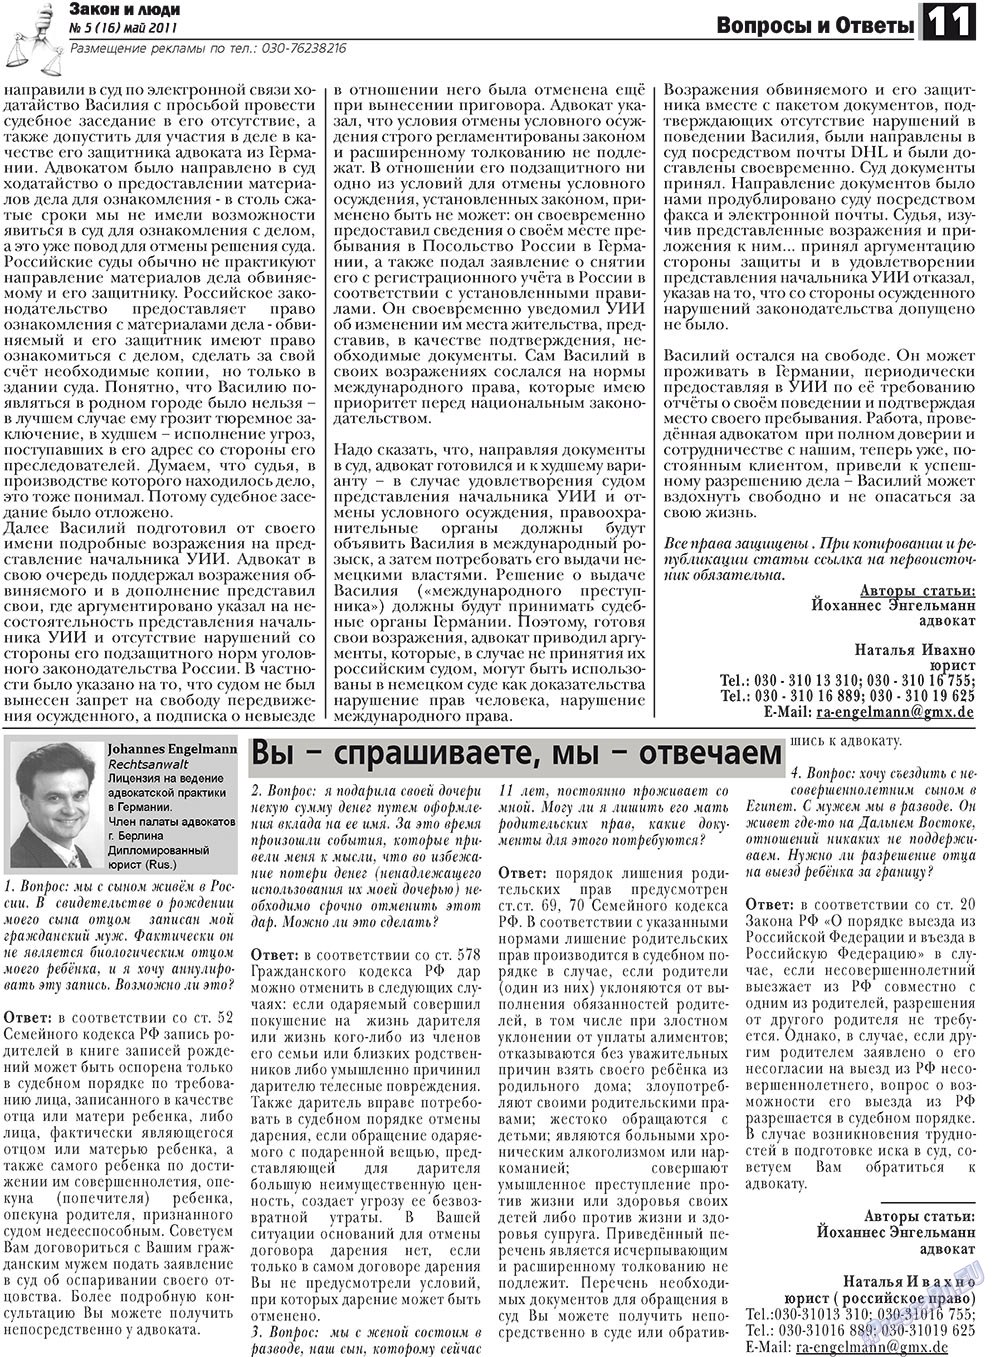 Закон и люди, газета. 2011 №5 стр.11